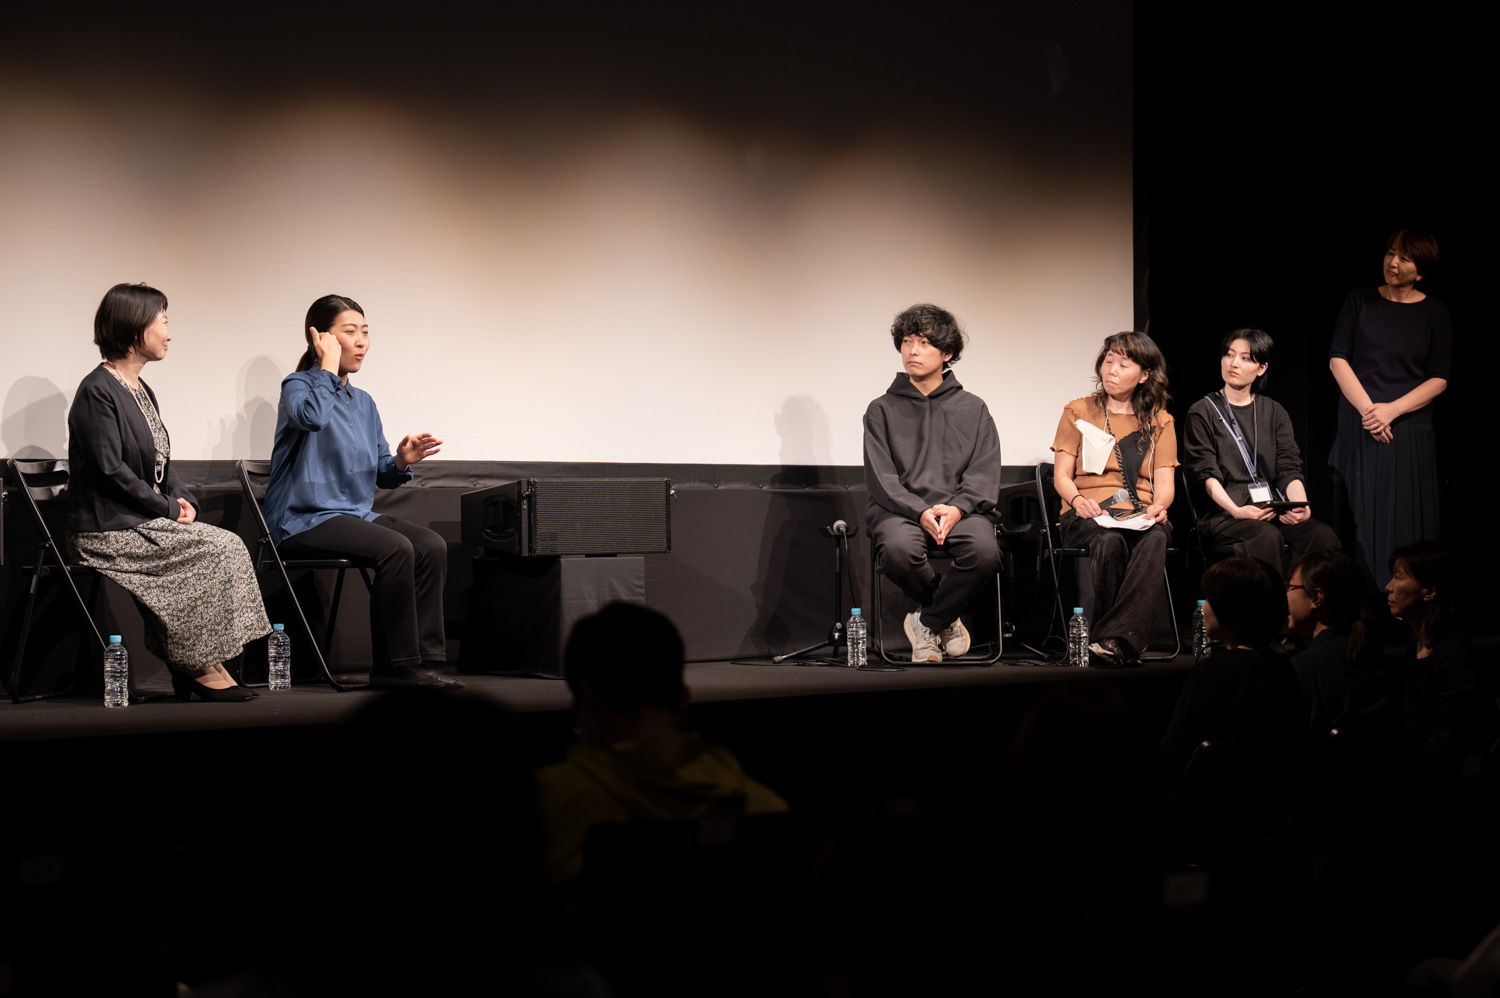 左から：TA-netの廣川麻子さん、手話弁士を務めた那須映里さん、「cocoon」の作・演出を務めた藤田貴大さん、THEATRE for ALLの金森香、林芽生。